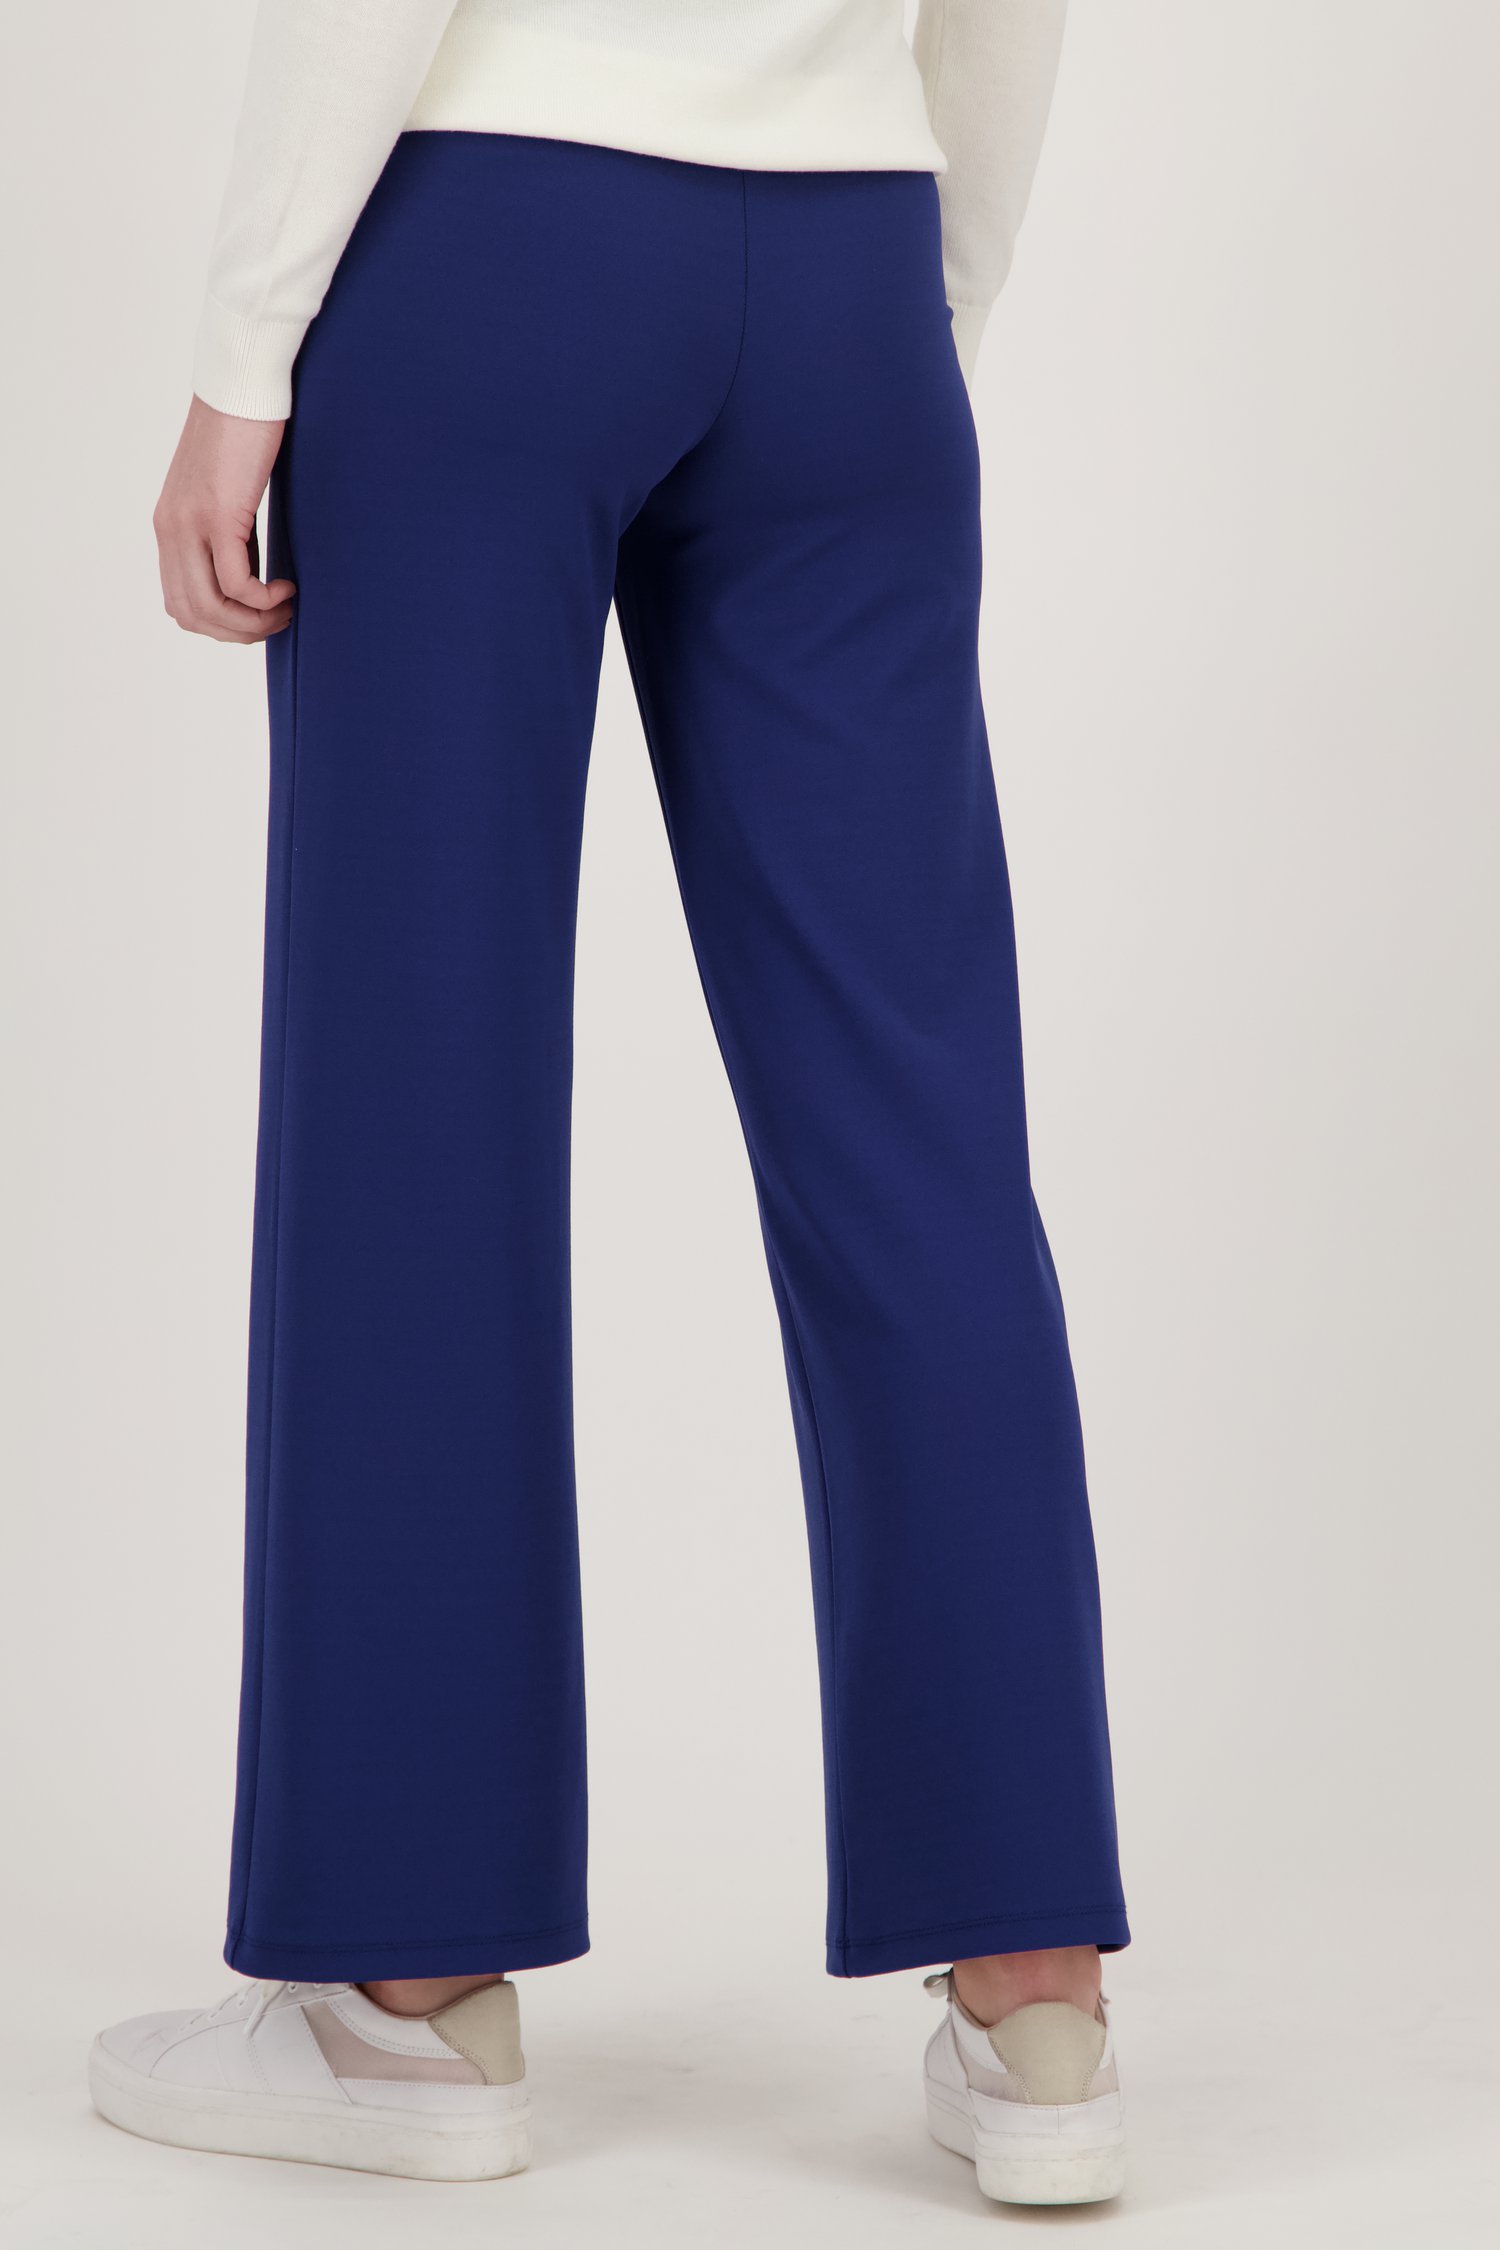 Pantalon bleu foncé avec stretch  de Liberty Island pour Femmes